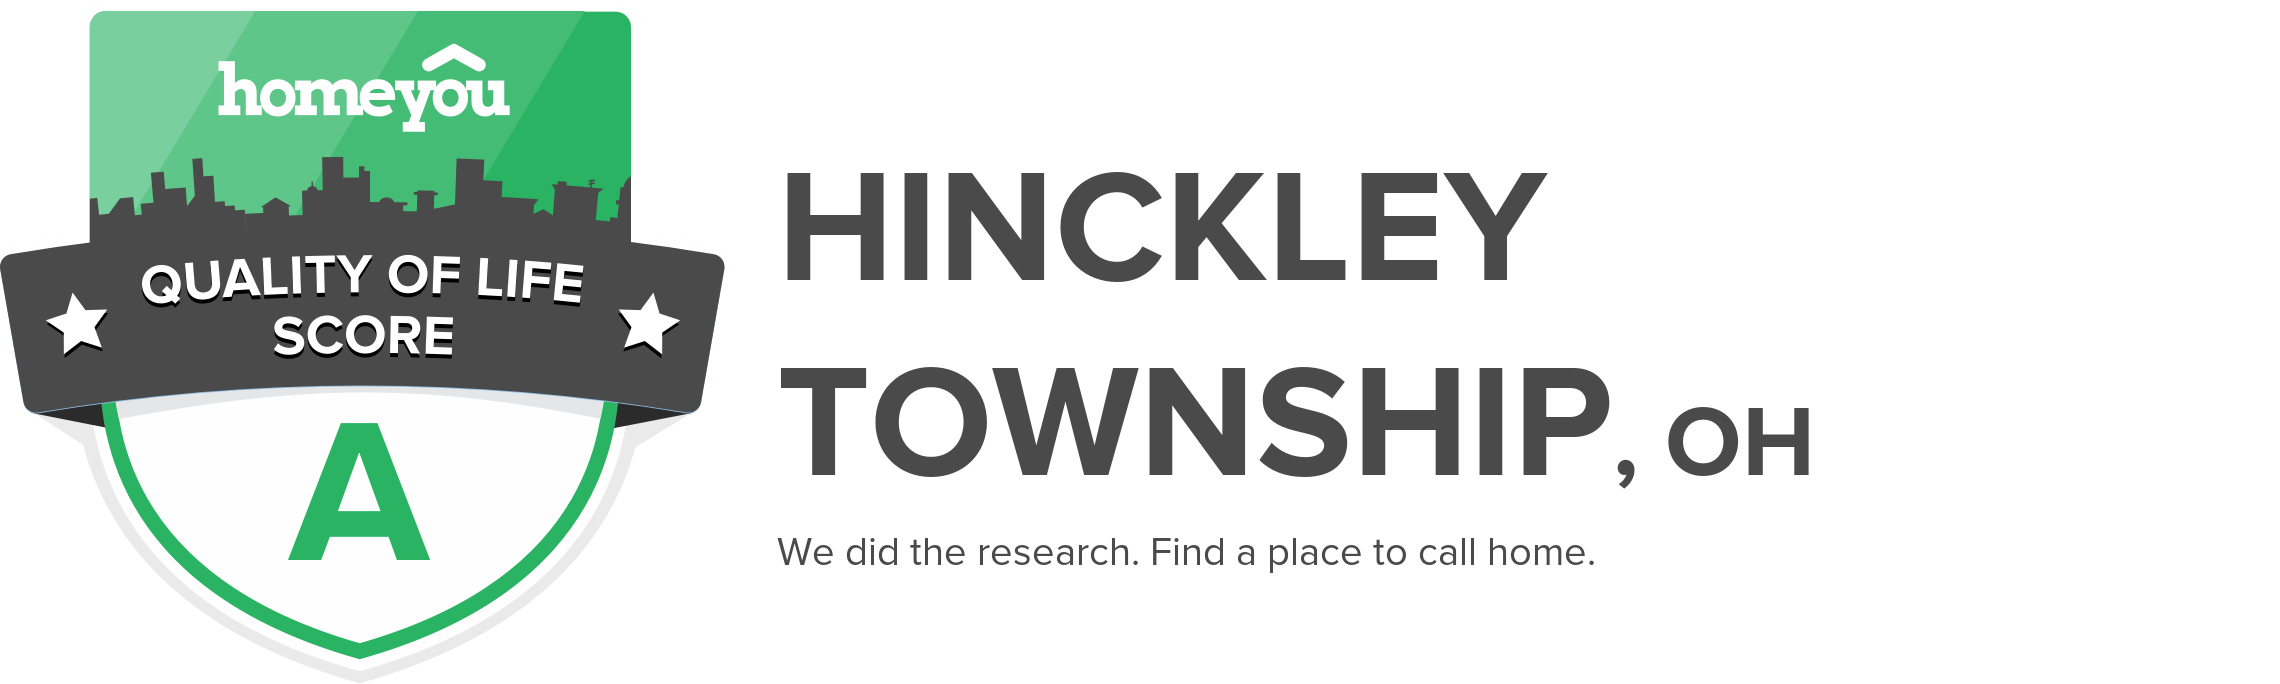 Hinckley township, OH